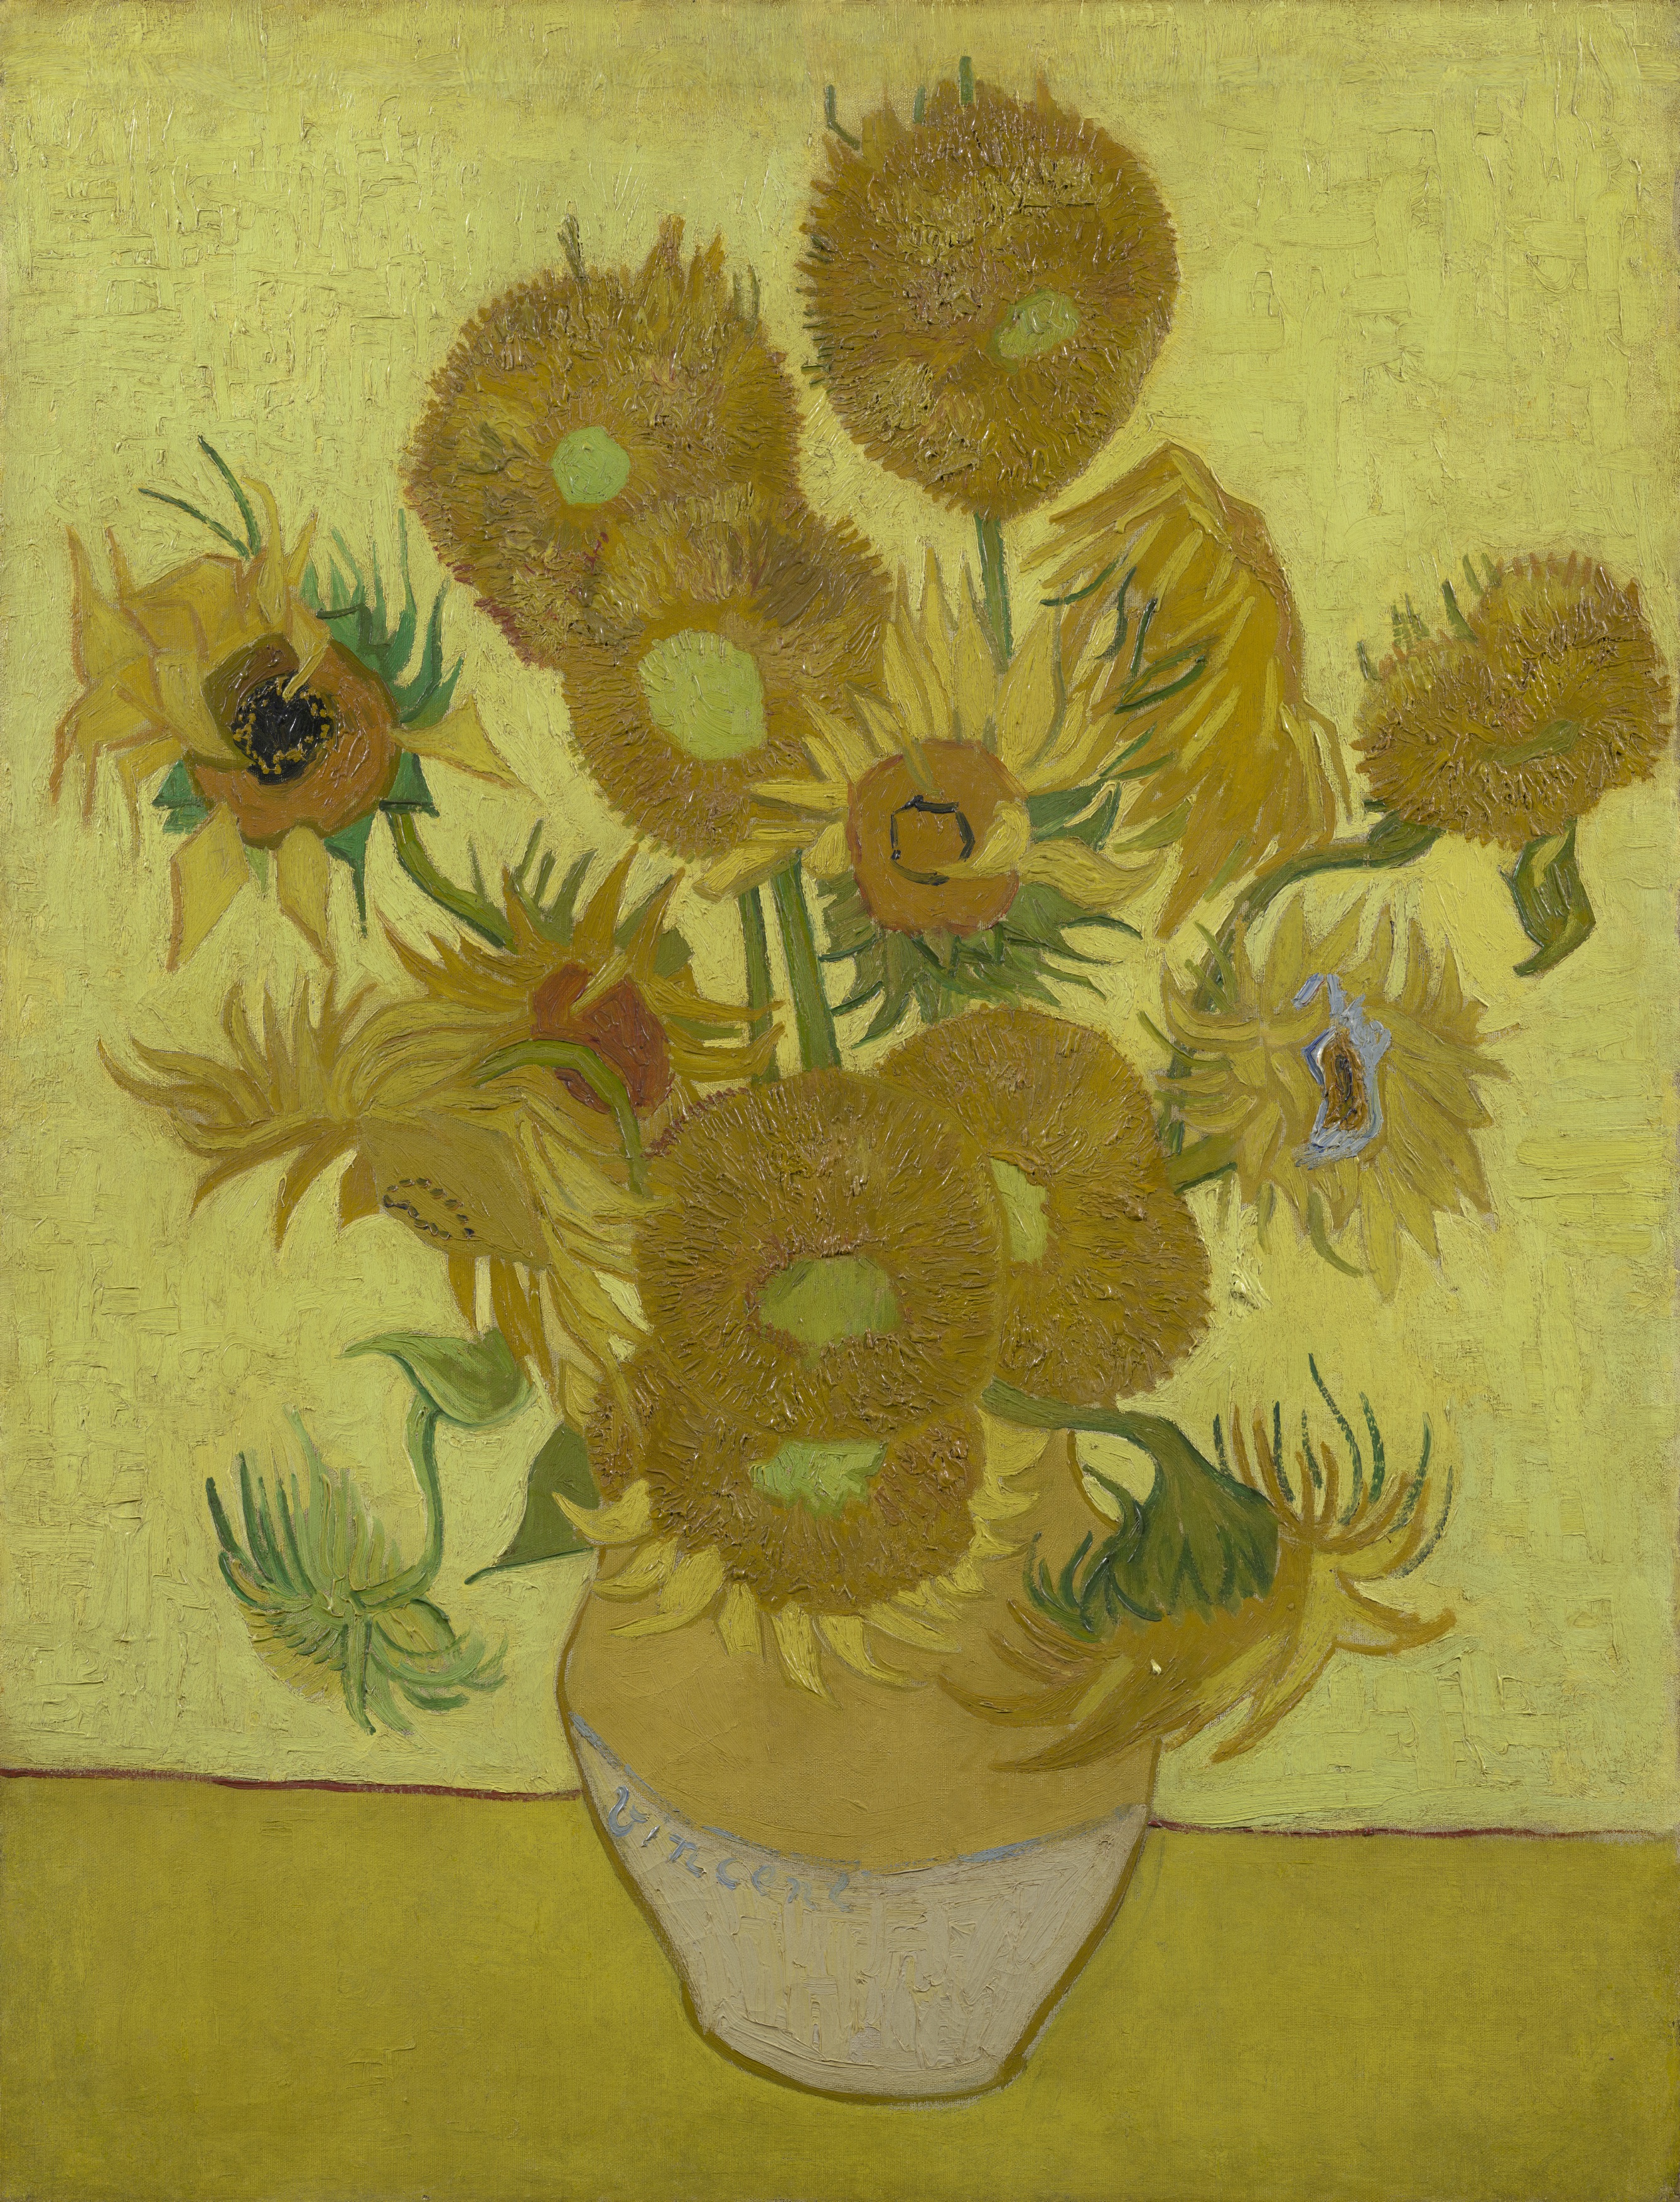 Ayçiçekleri by Vincent van Gogh - Ocak 1889 - 95 cm x 73 cm Van Gogh Müzesi